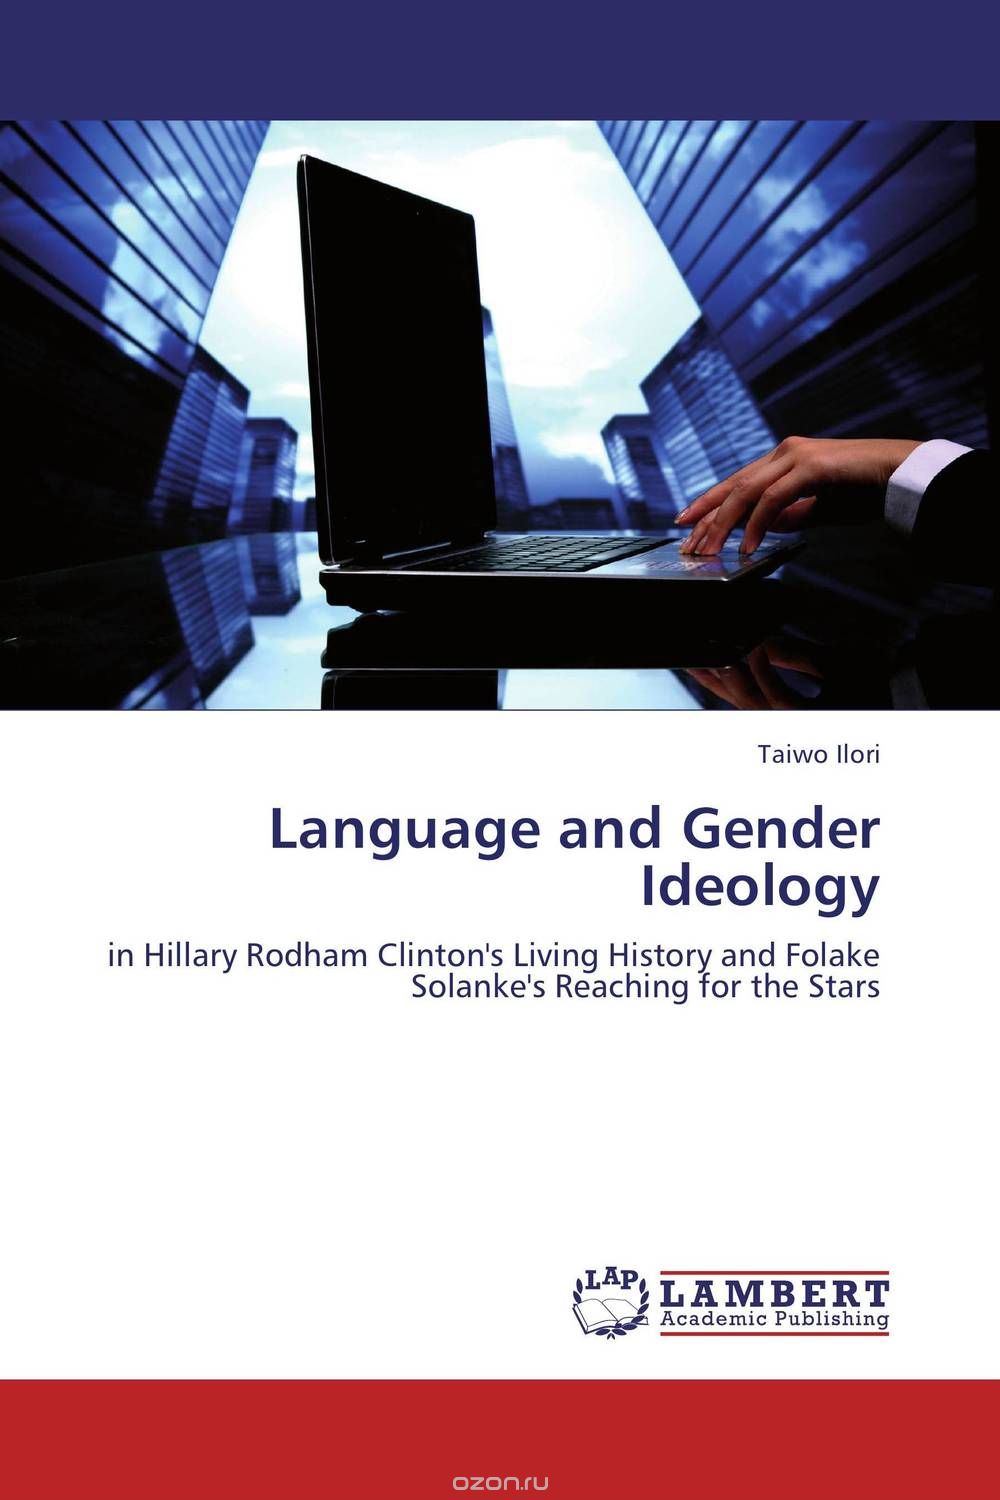 Скачать книгу "Language and Gender Ideology"